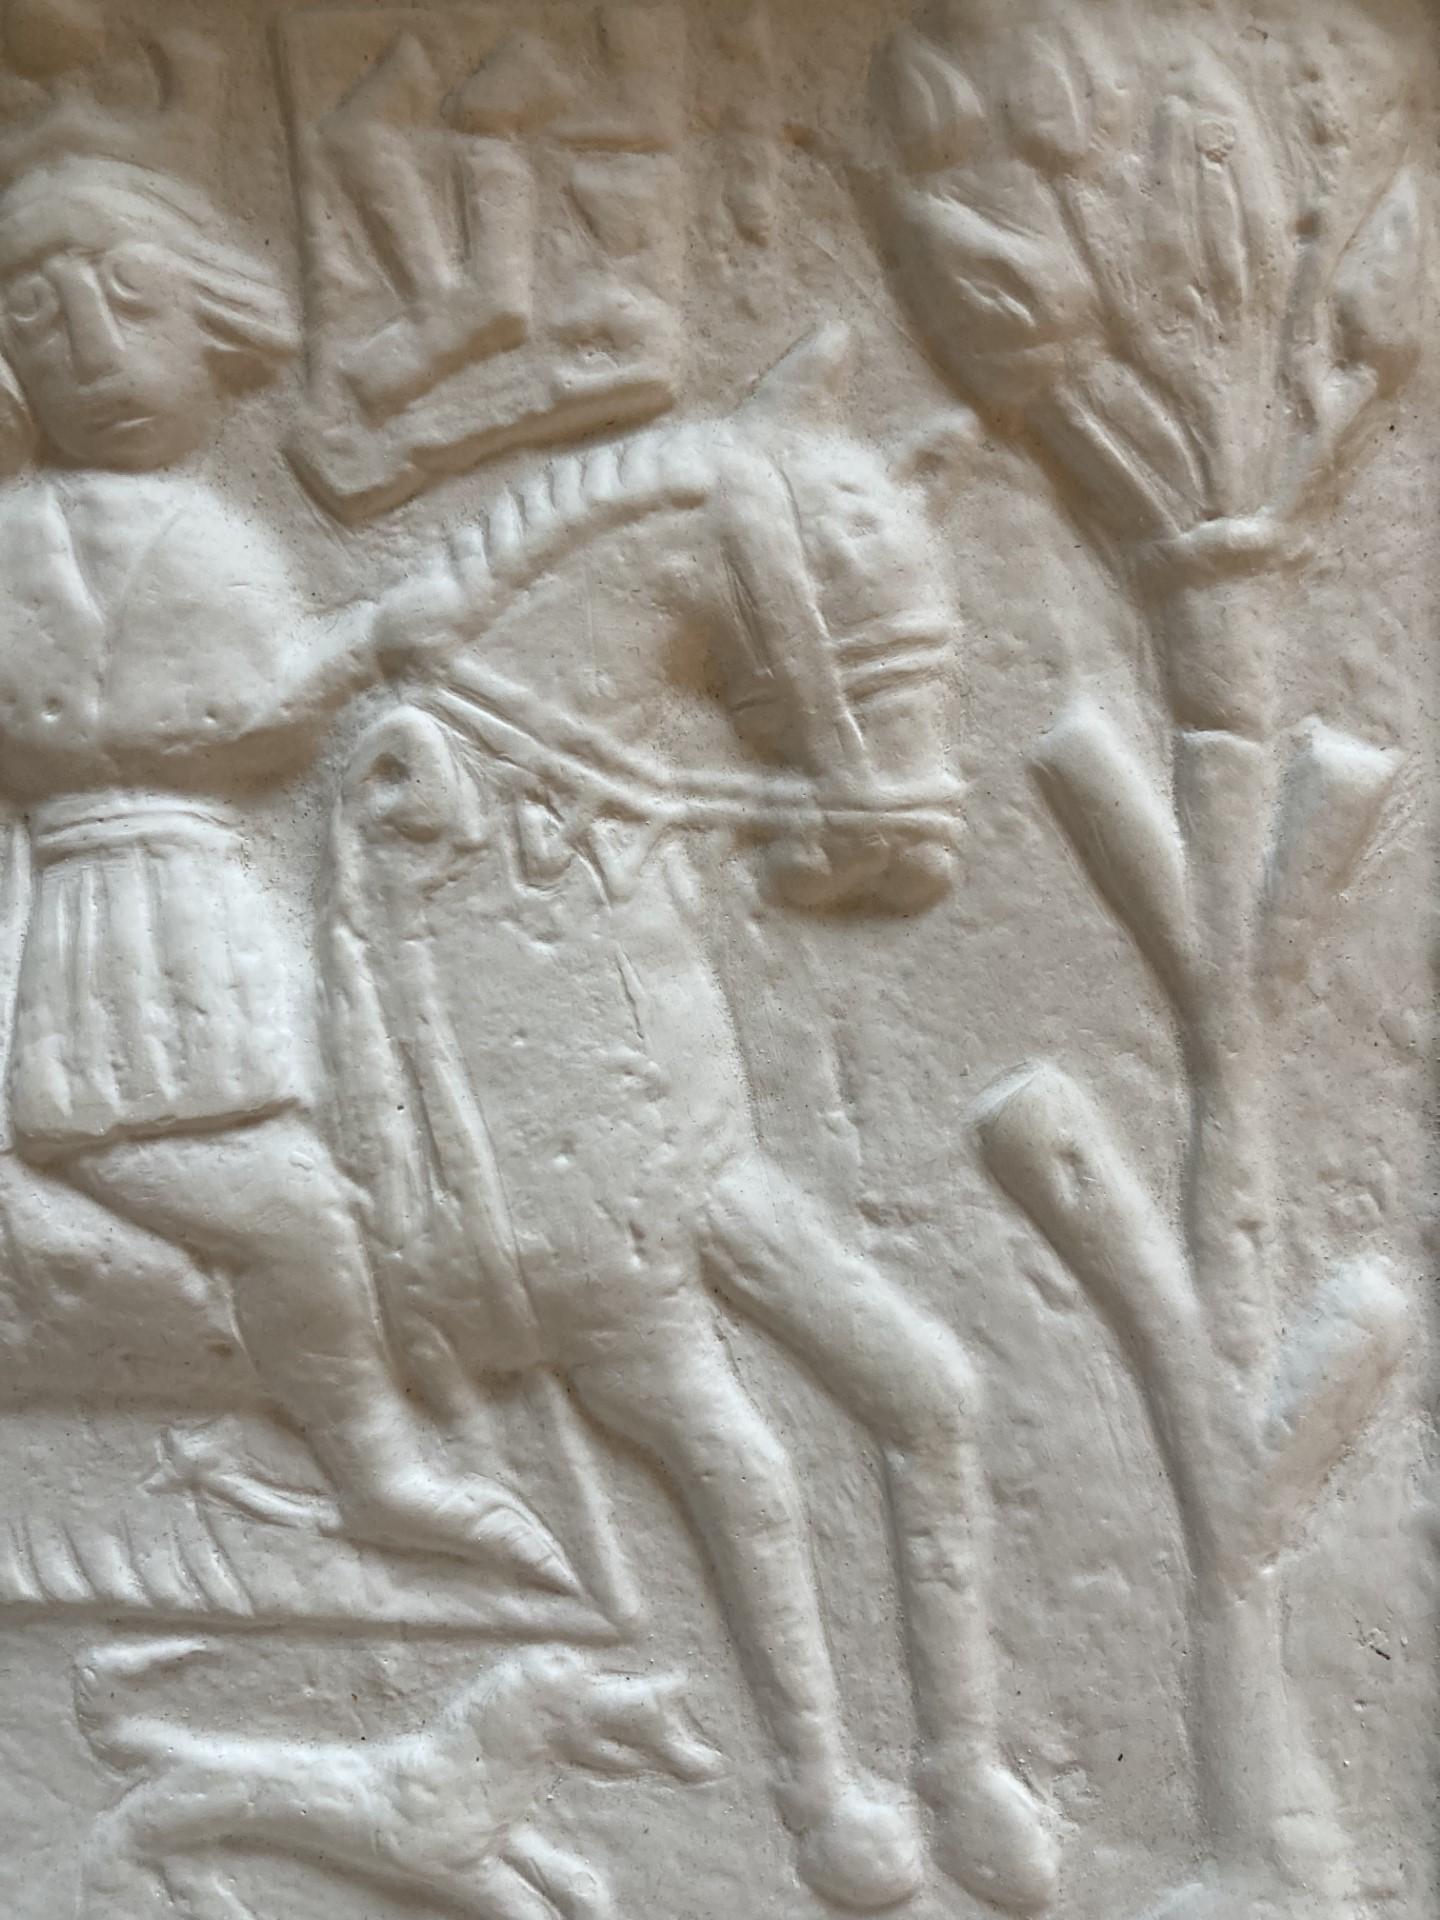 Men on a Horse - Étain médiéval moulé en carreaux de gypse - Sculpture de Unknown